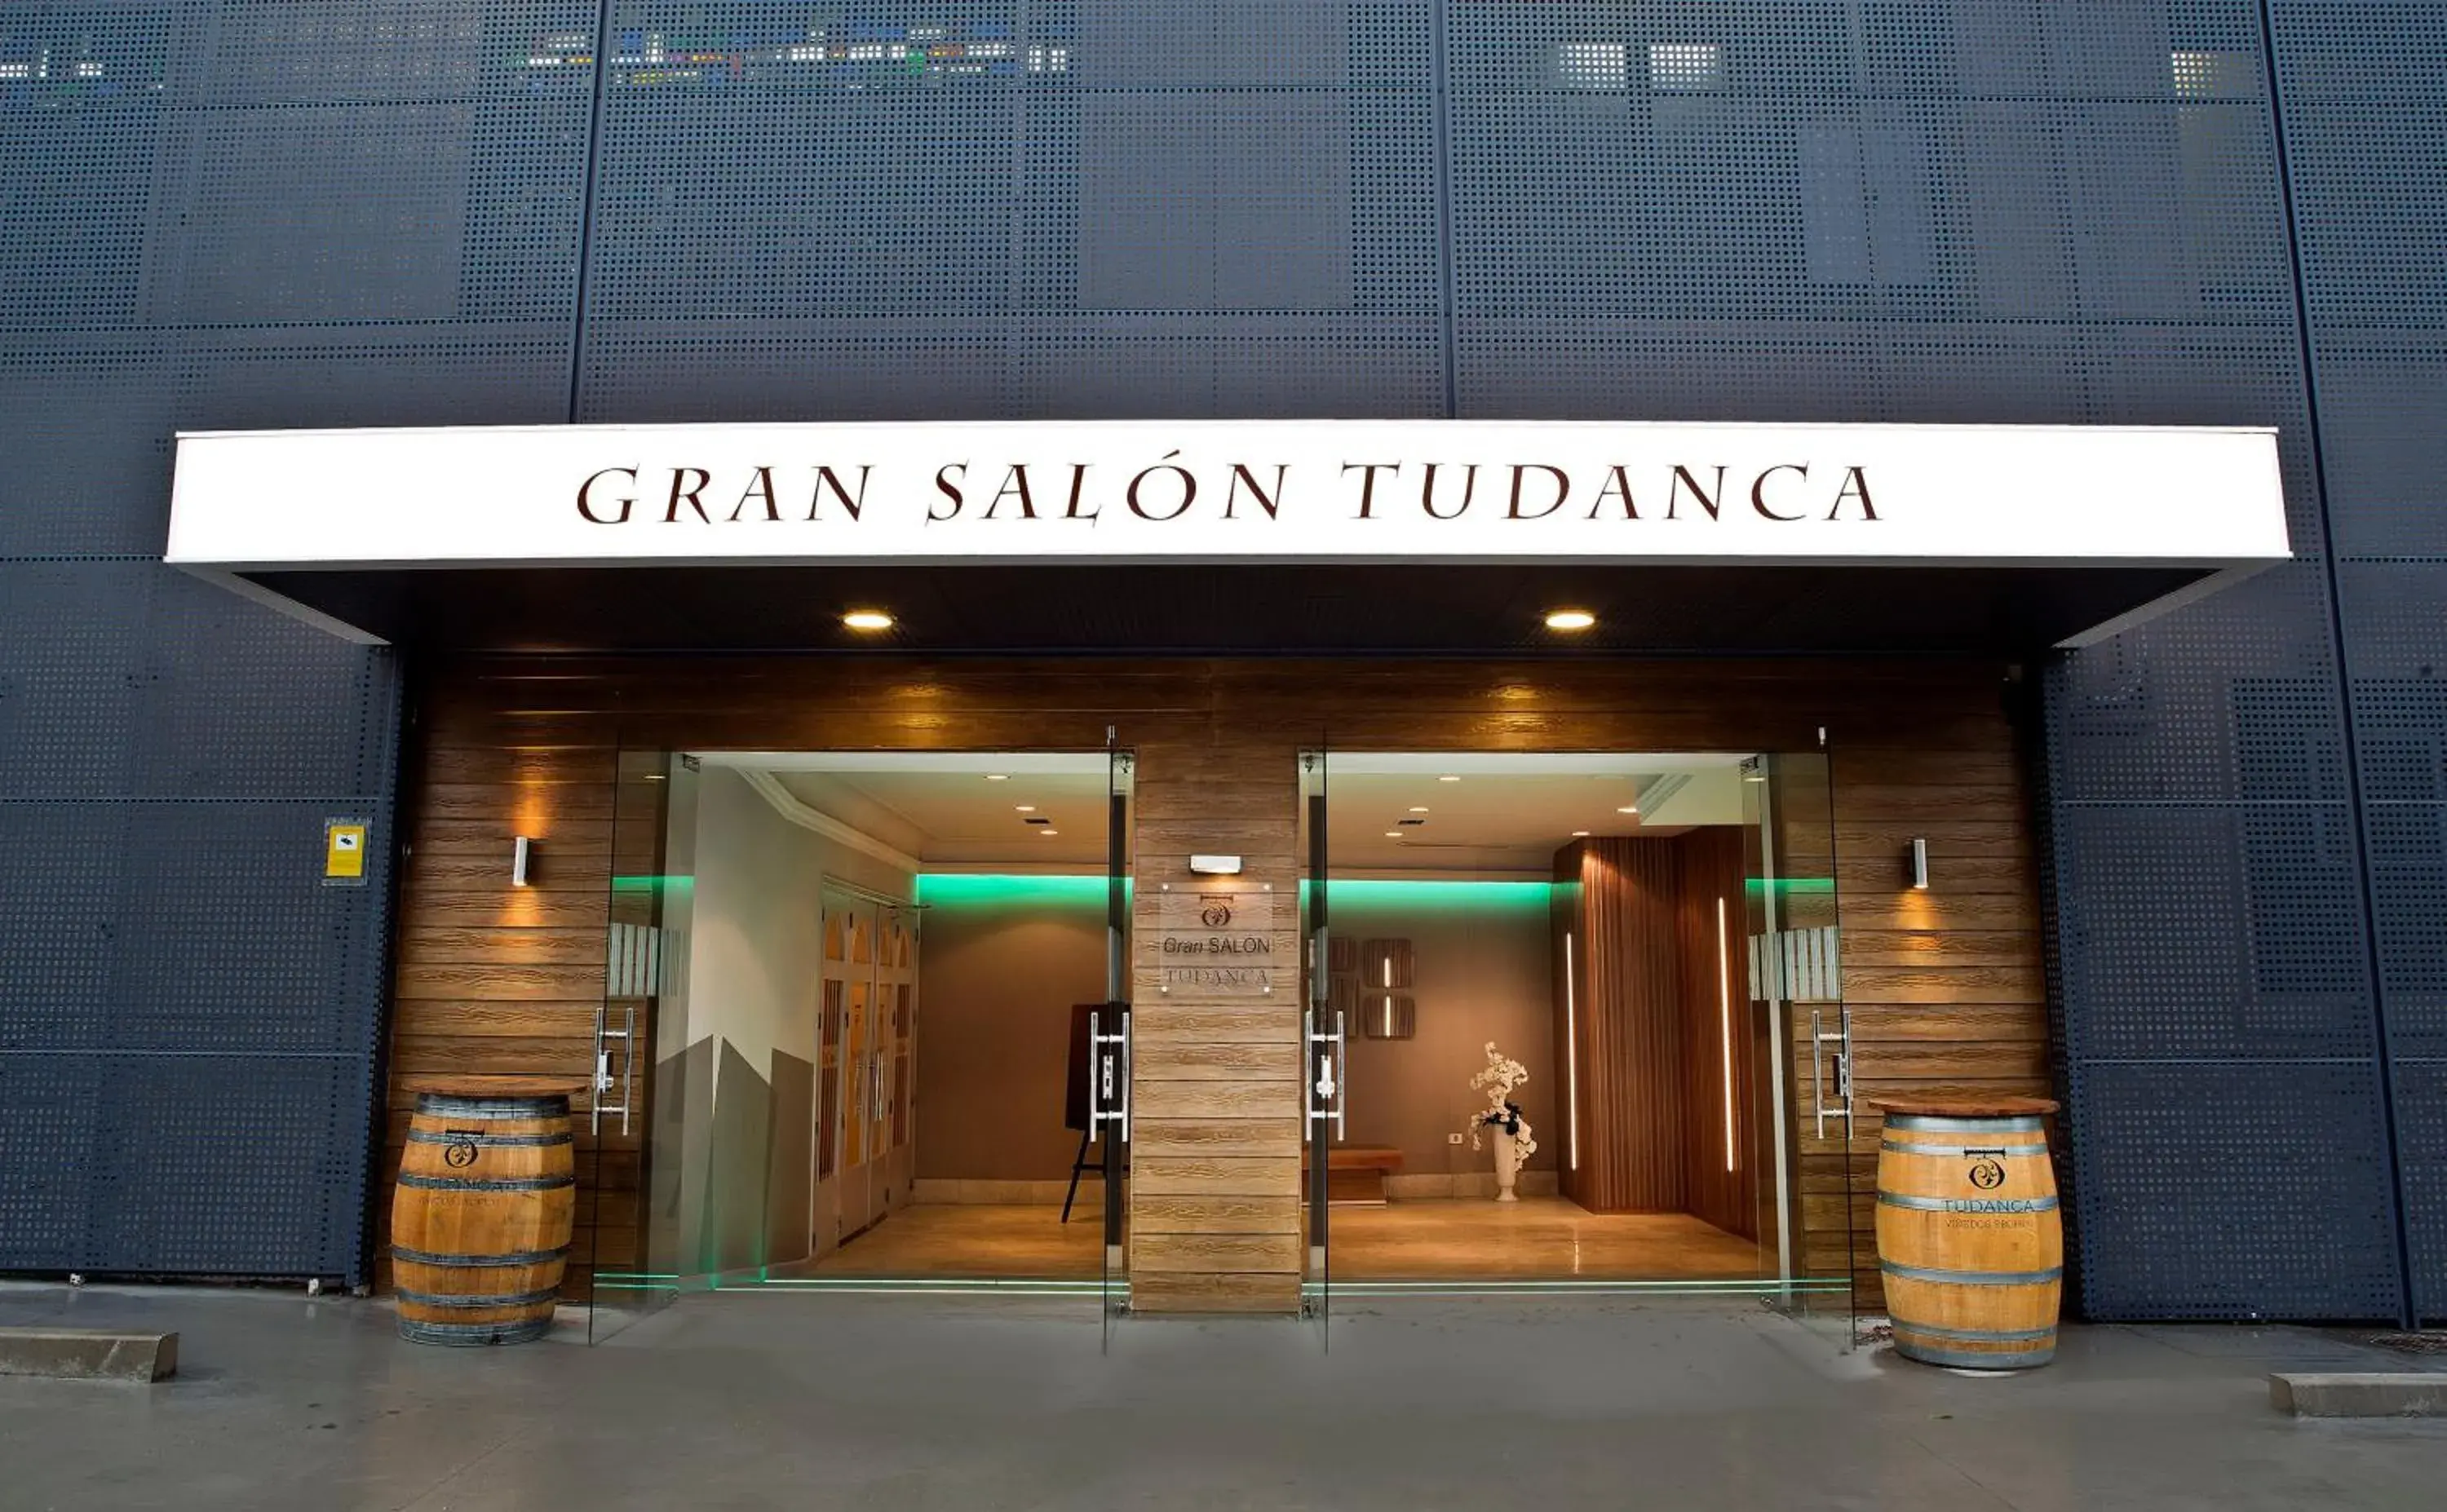 Banquet/Function facilities in Tudanca Miranda